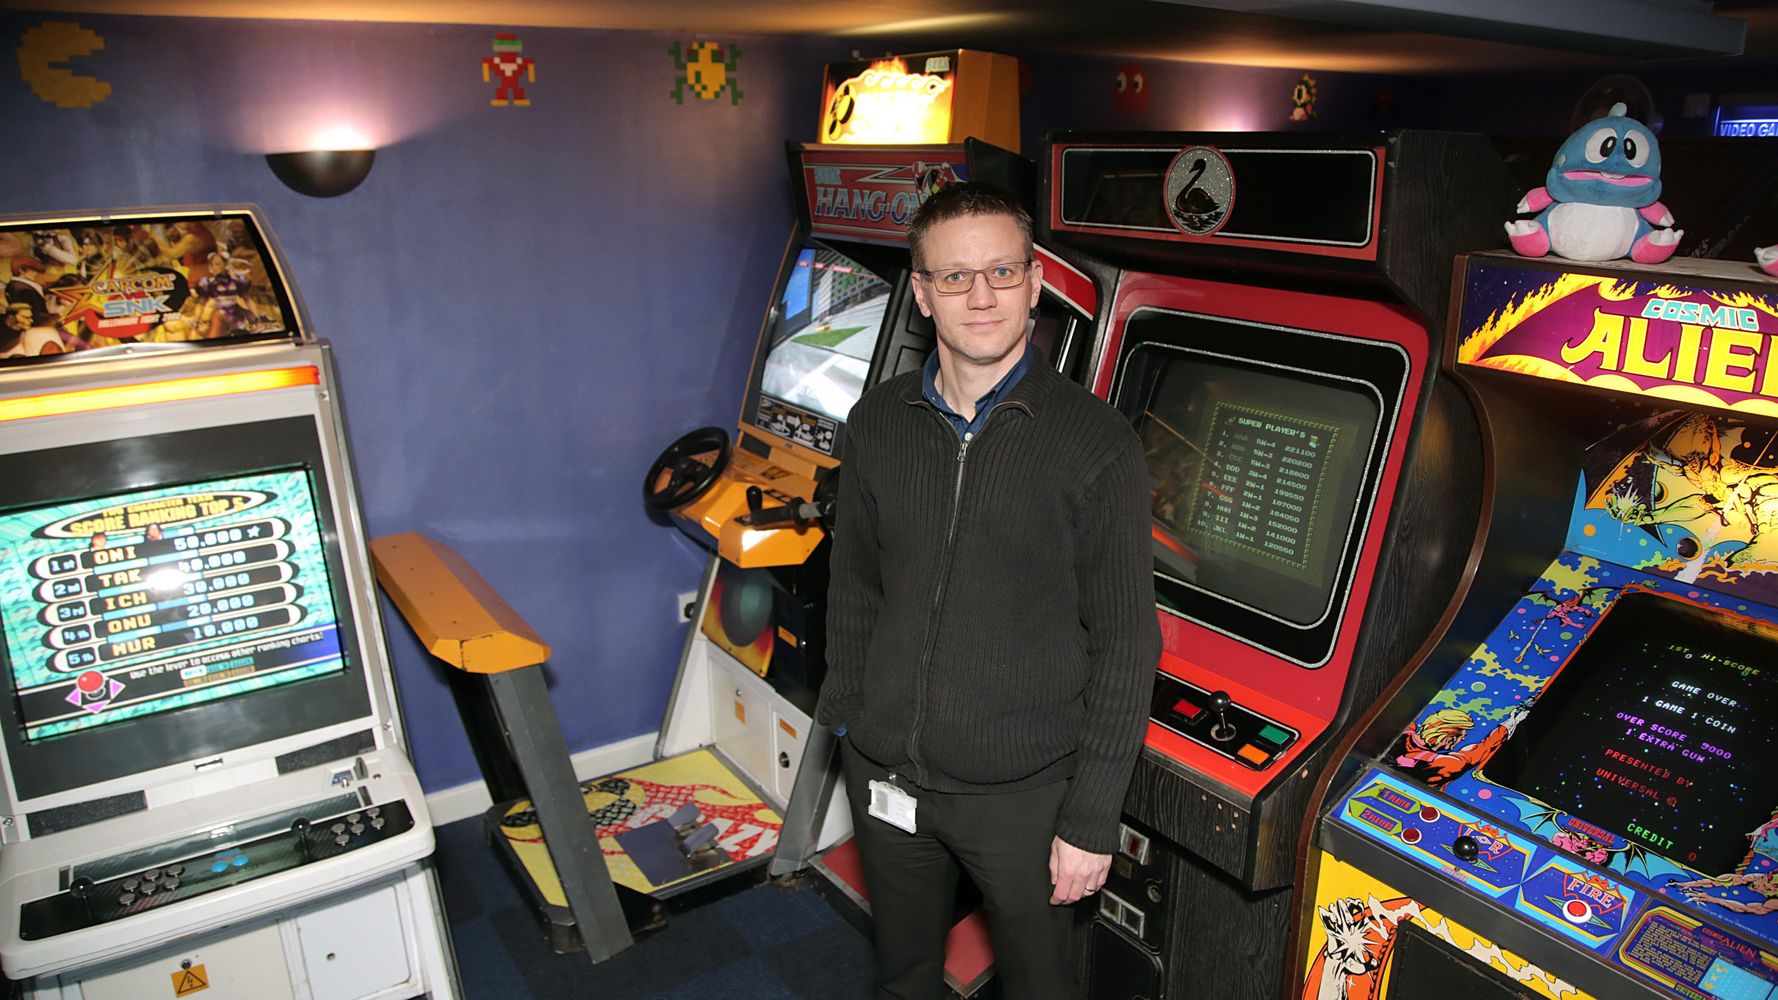 Crazy Taxi Arcade Game  Vintage Arcade Superstore